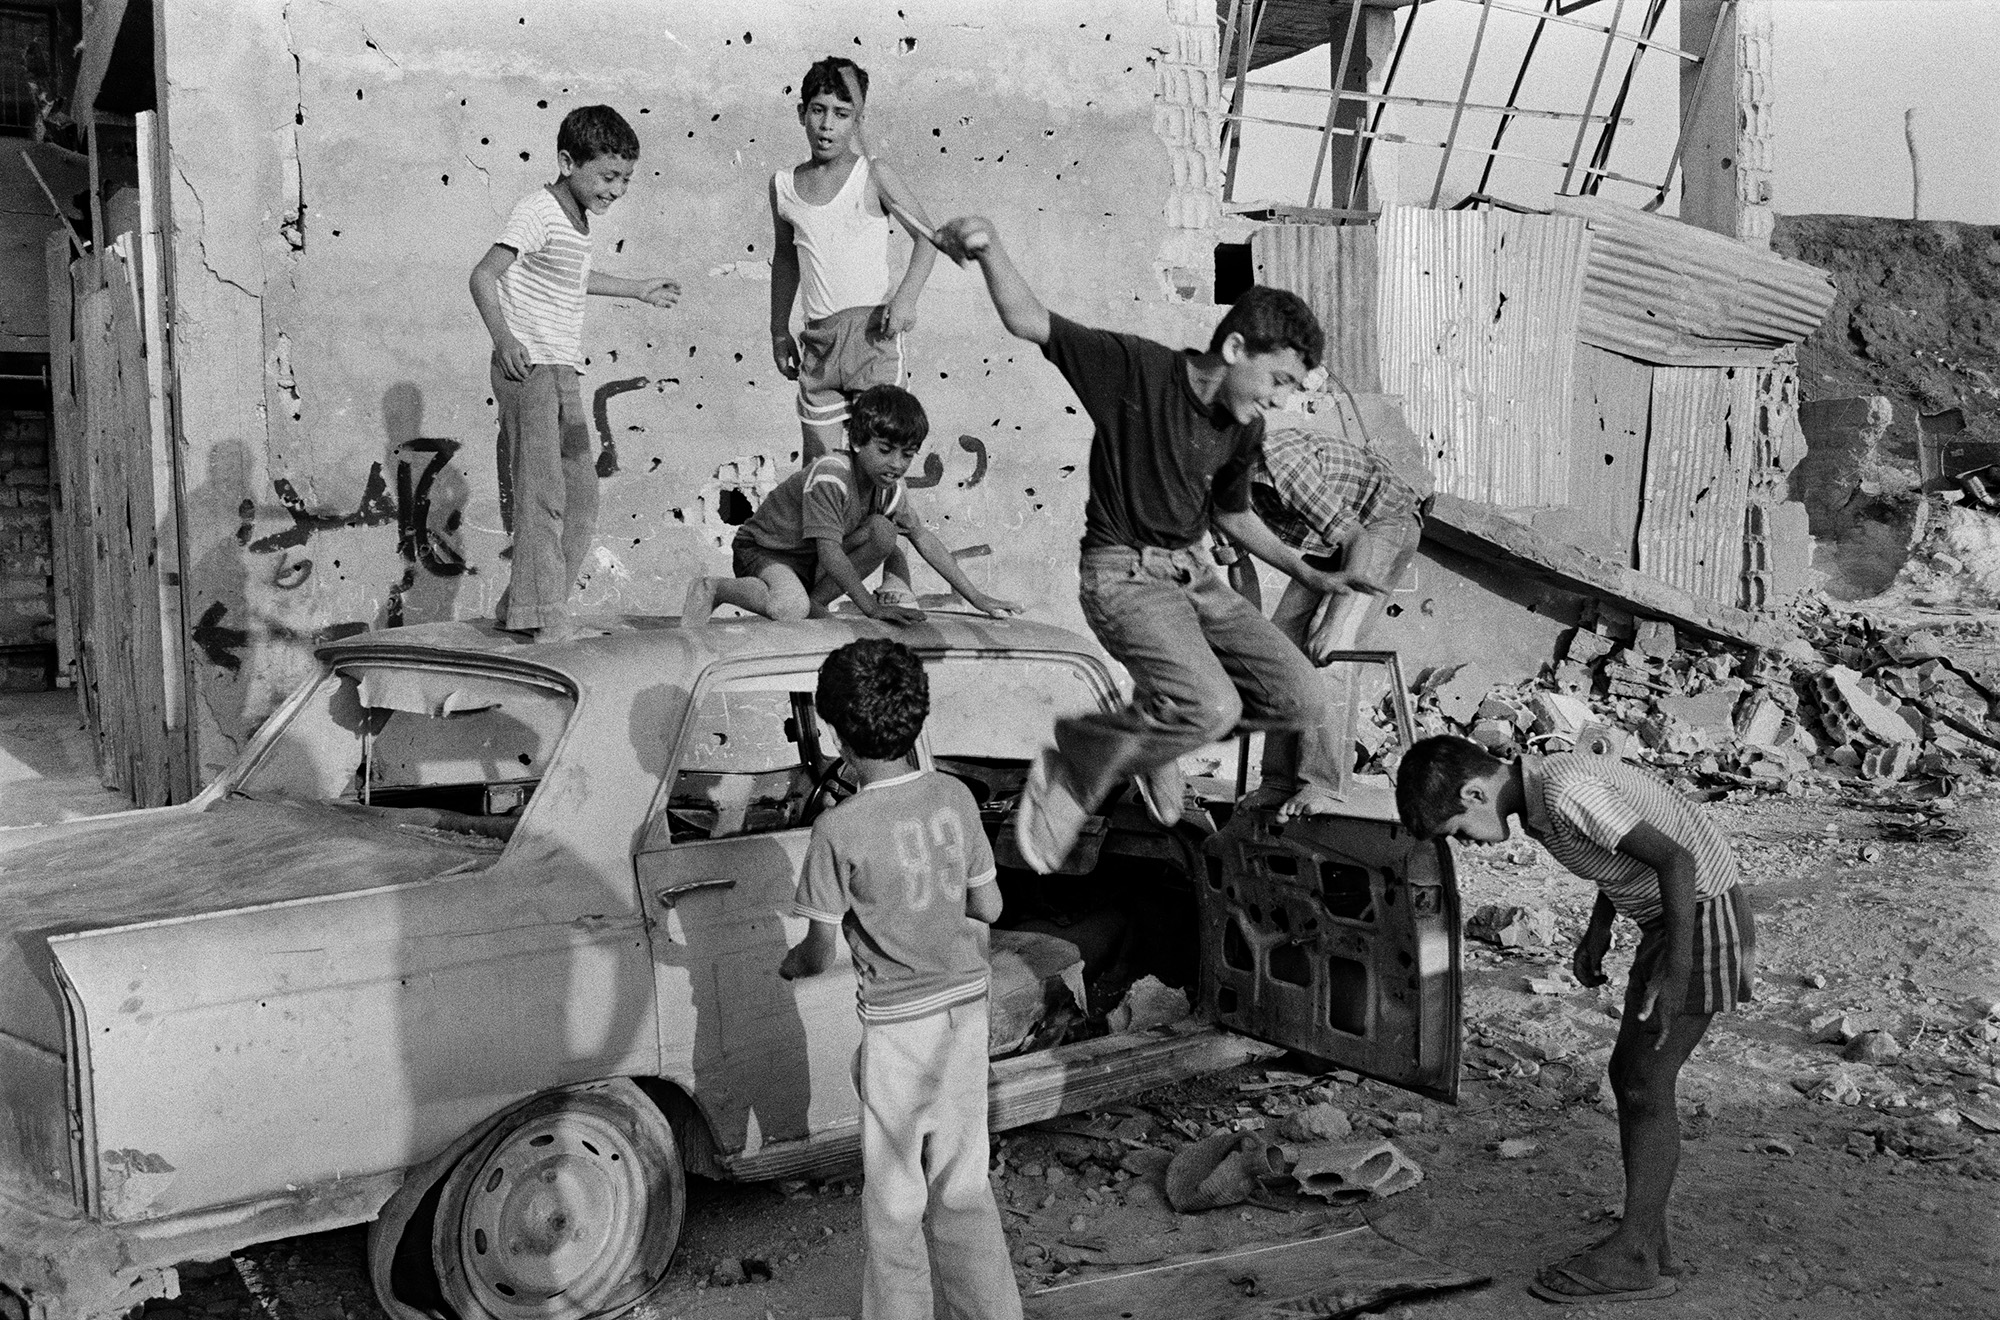 Beyrouth, Liban, 1983. Des enfants jouent dans les véhicules accidentés près du camp de Sabra et Chantila.